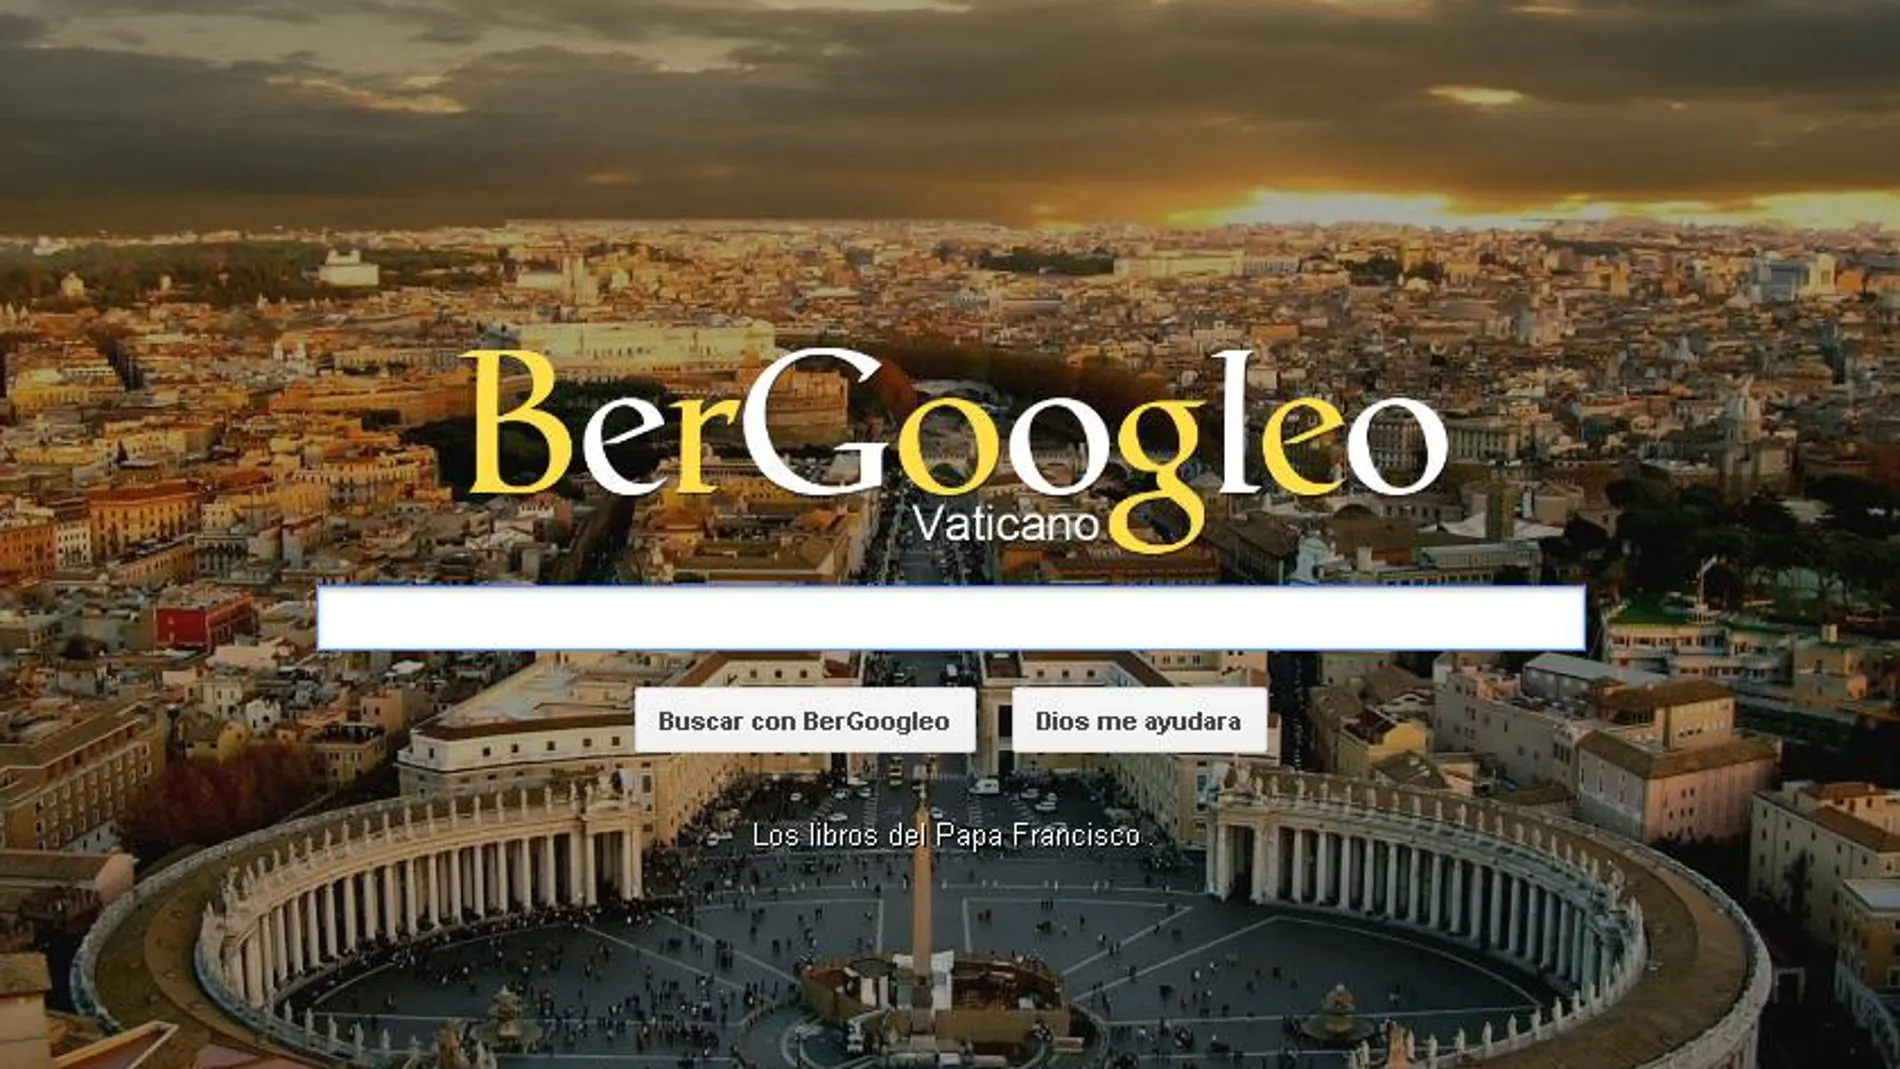 "Bergoogleo", luz divina para las búsquedas en internet